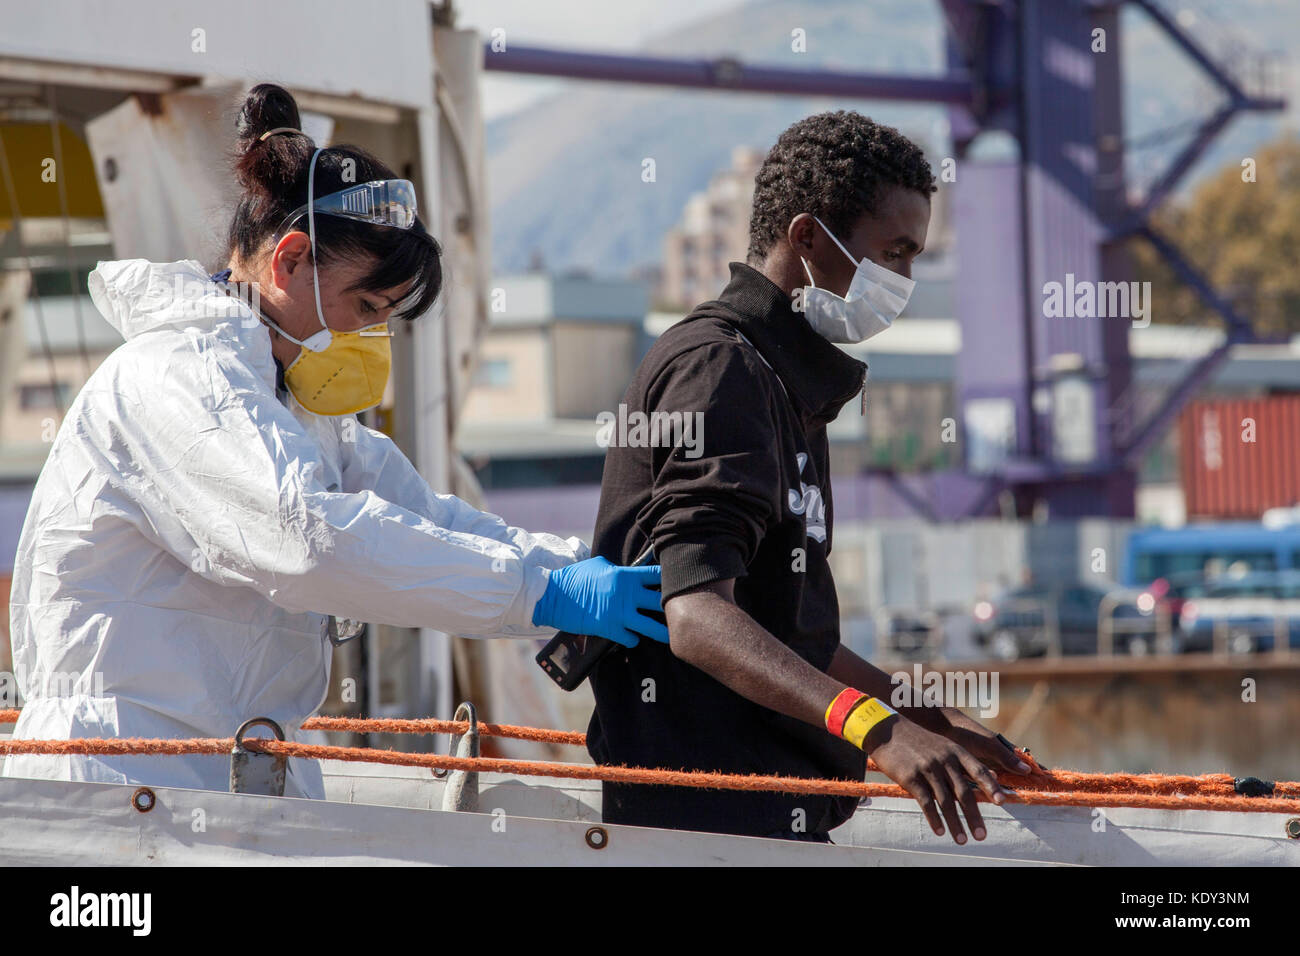 L'Aquarius (sos mediterranee) nave arrivato al porto di palermo, Italia il 13 ottobre 2017 portante 606 migranti. Foto Stock